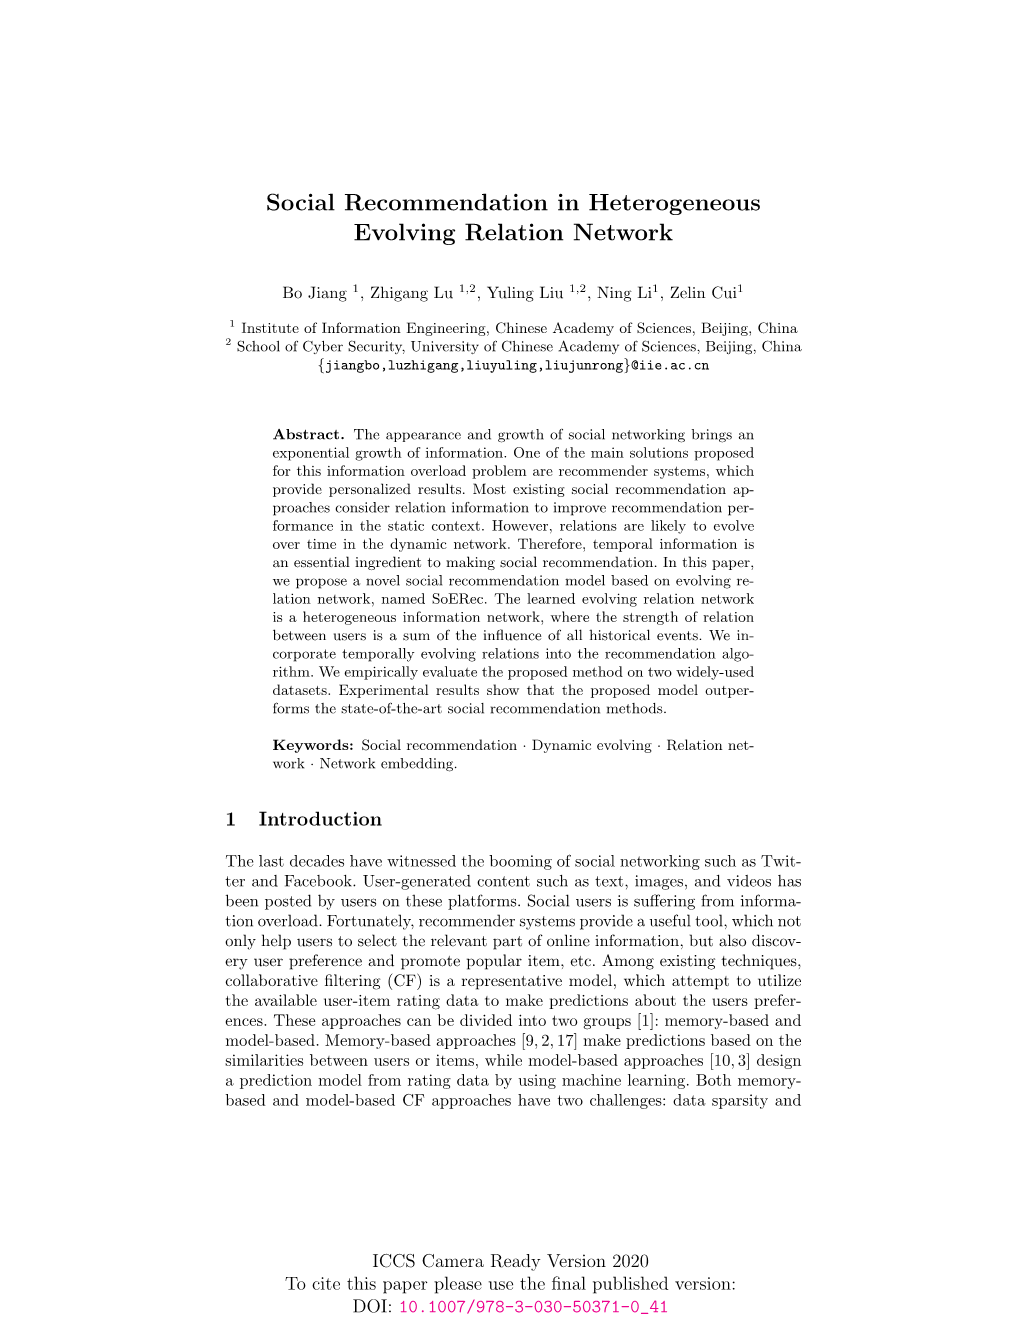 Social Recommendation in Heterogeneous Evolving Relation Network